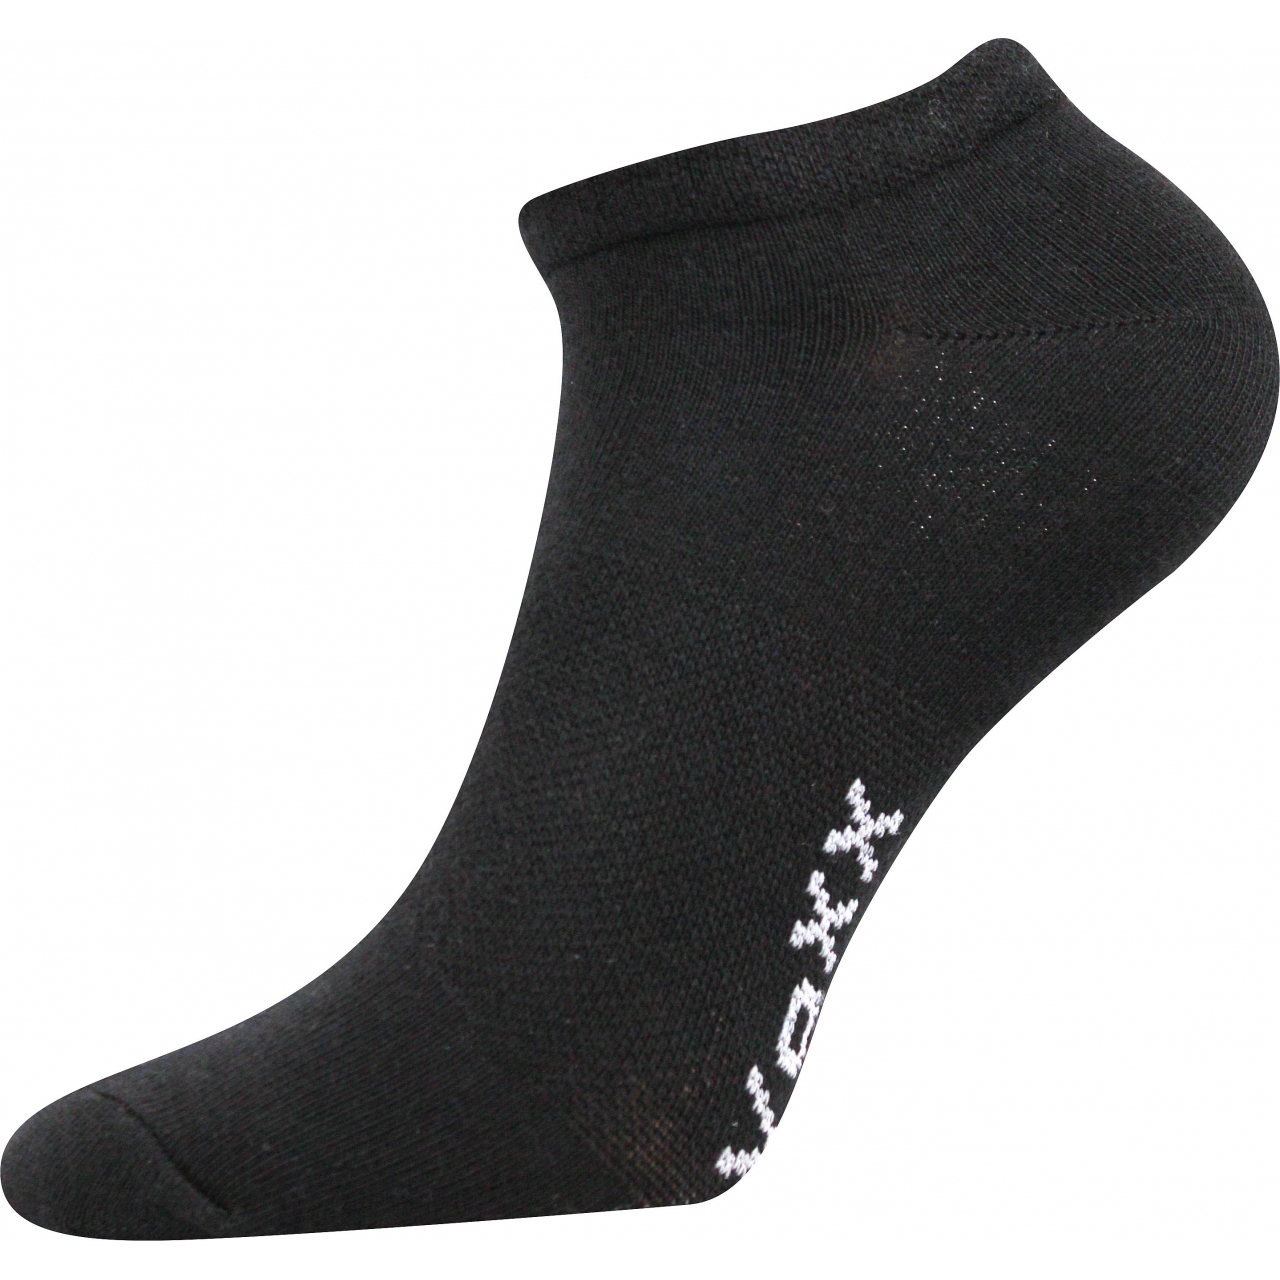 Ponožky unisex Voxx Rex 00 - černé, 35-38